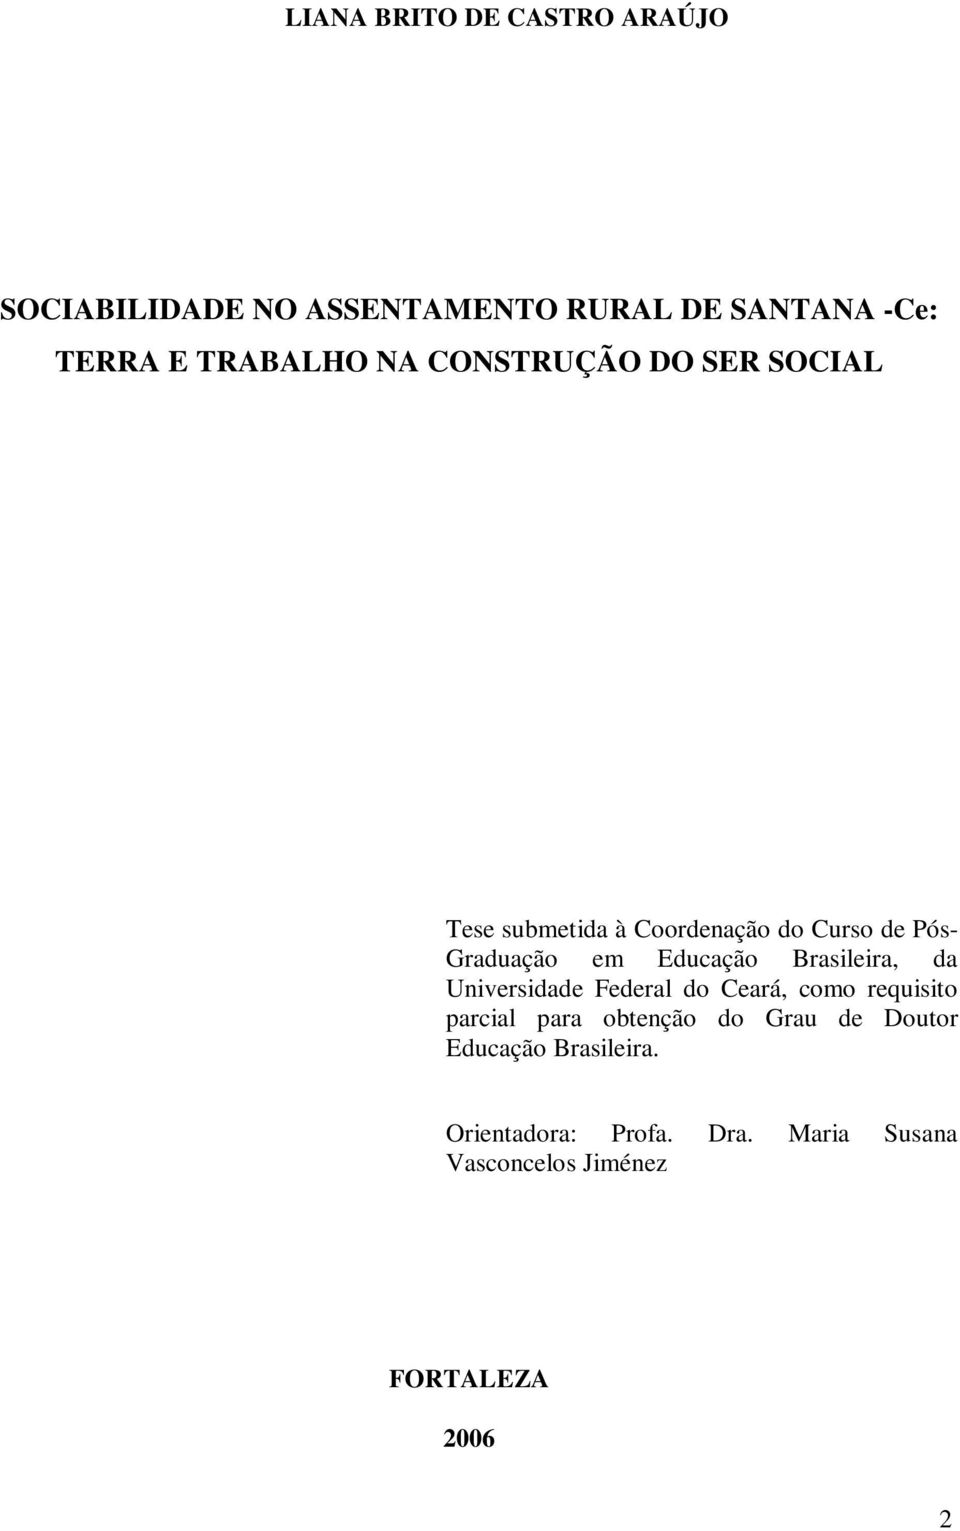 Brasileira, da Universidade Federal do Ceará, como requisito parcial para obtenção do Grau de